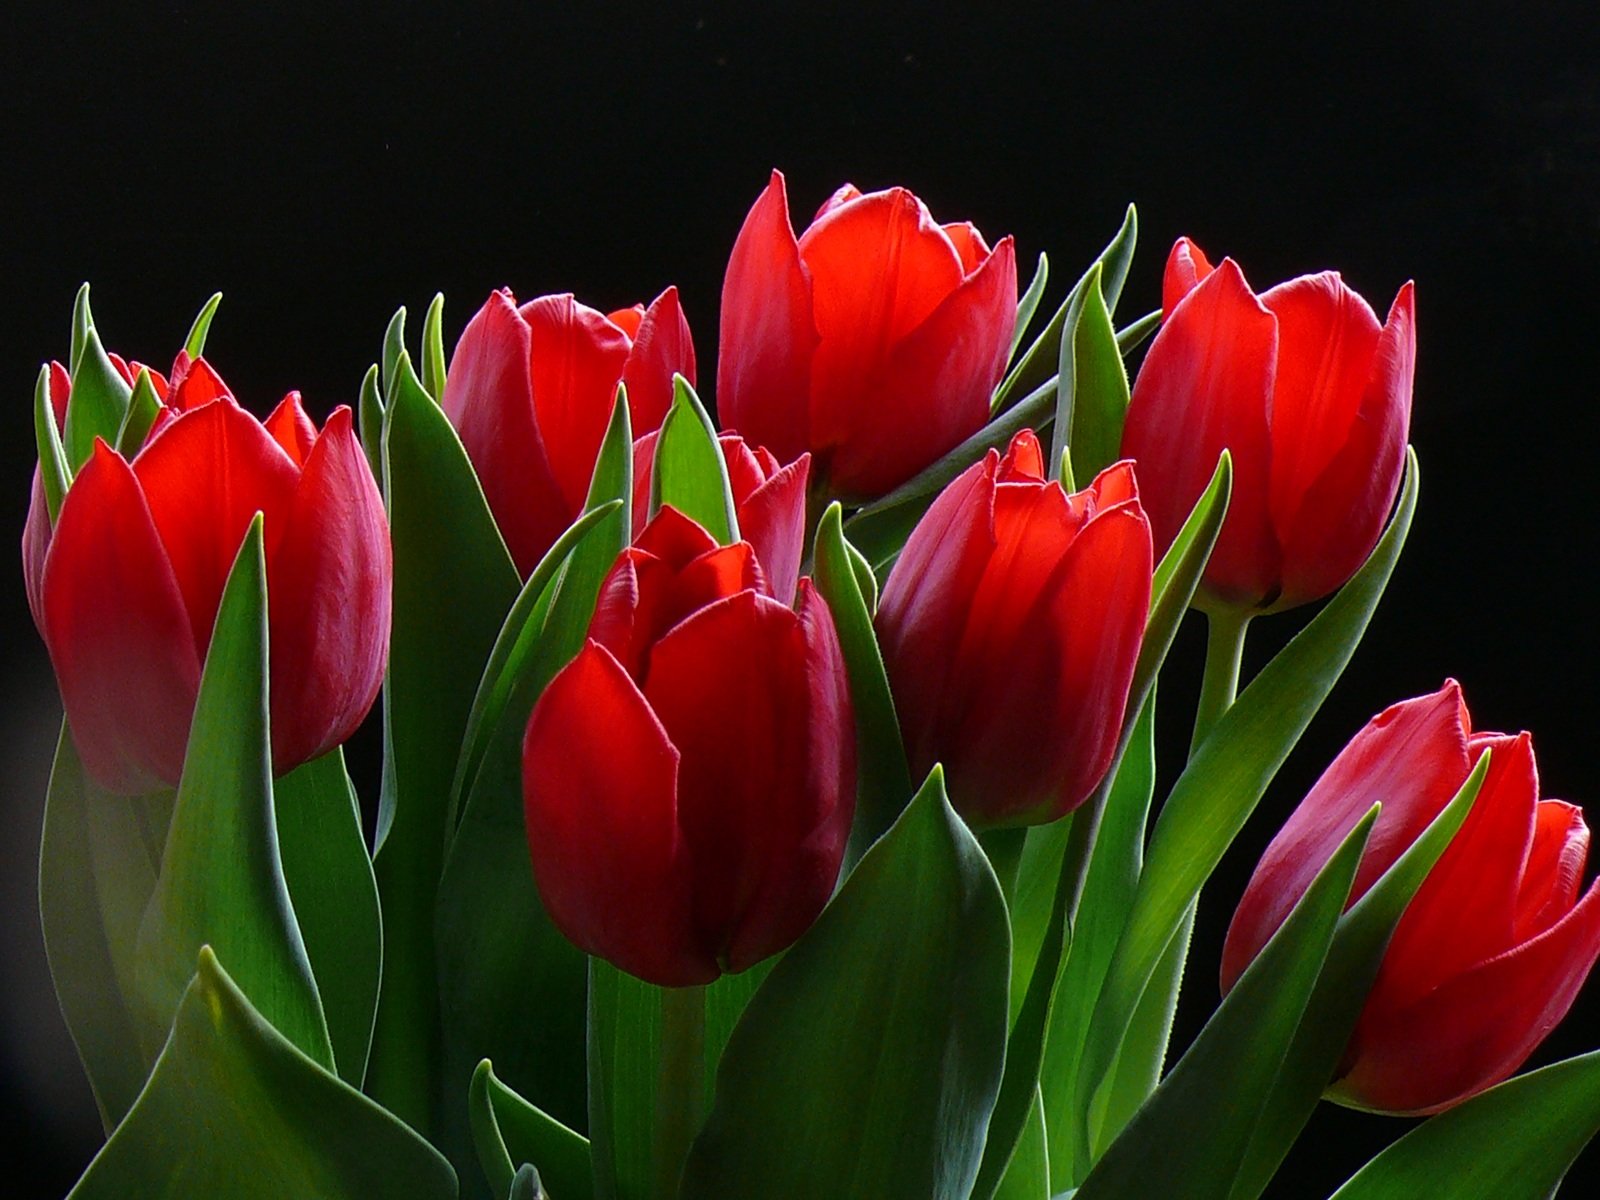 http://zelgan.ucoz.ru/Walpappers/flowers/RedRoses-1600.jpg